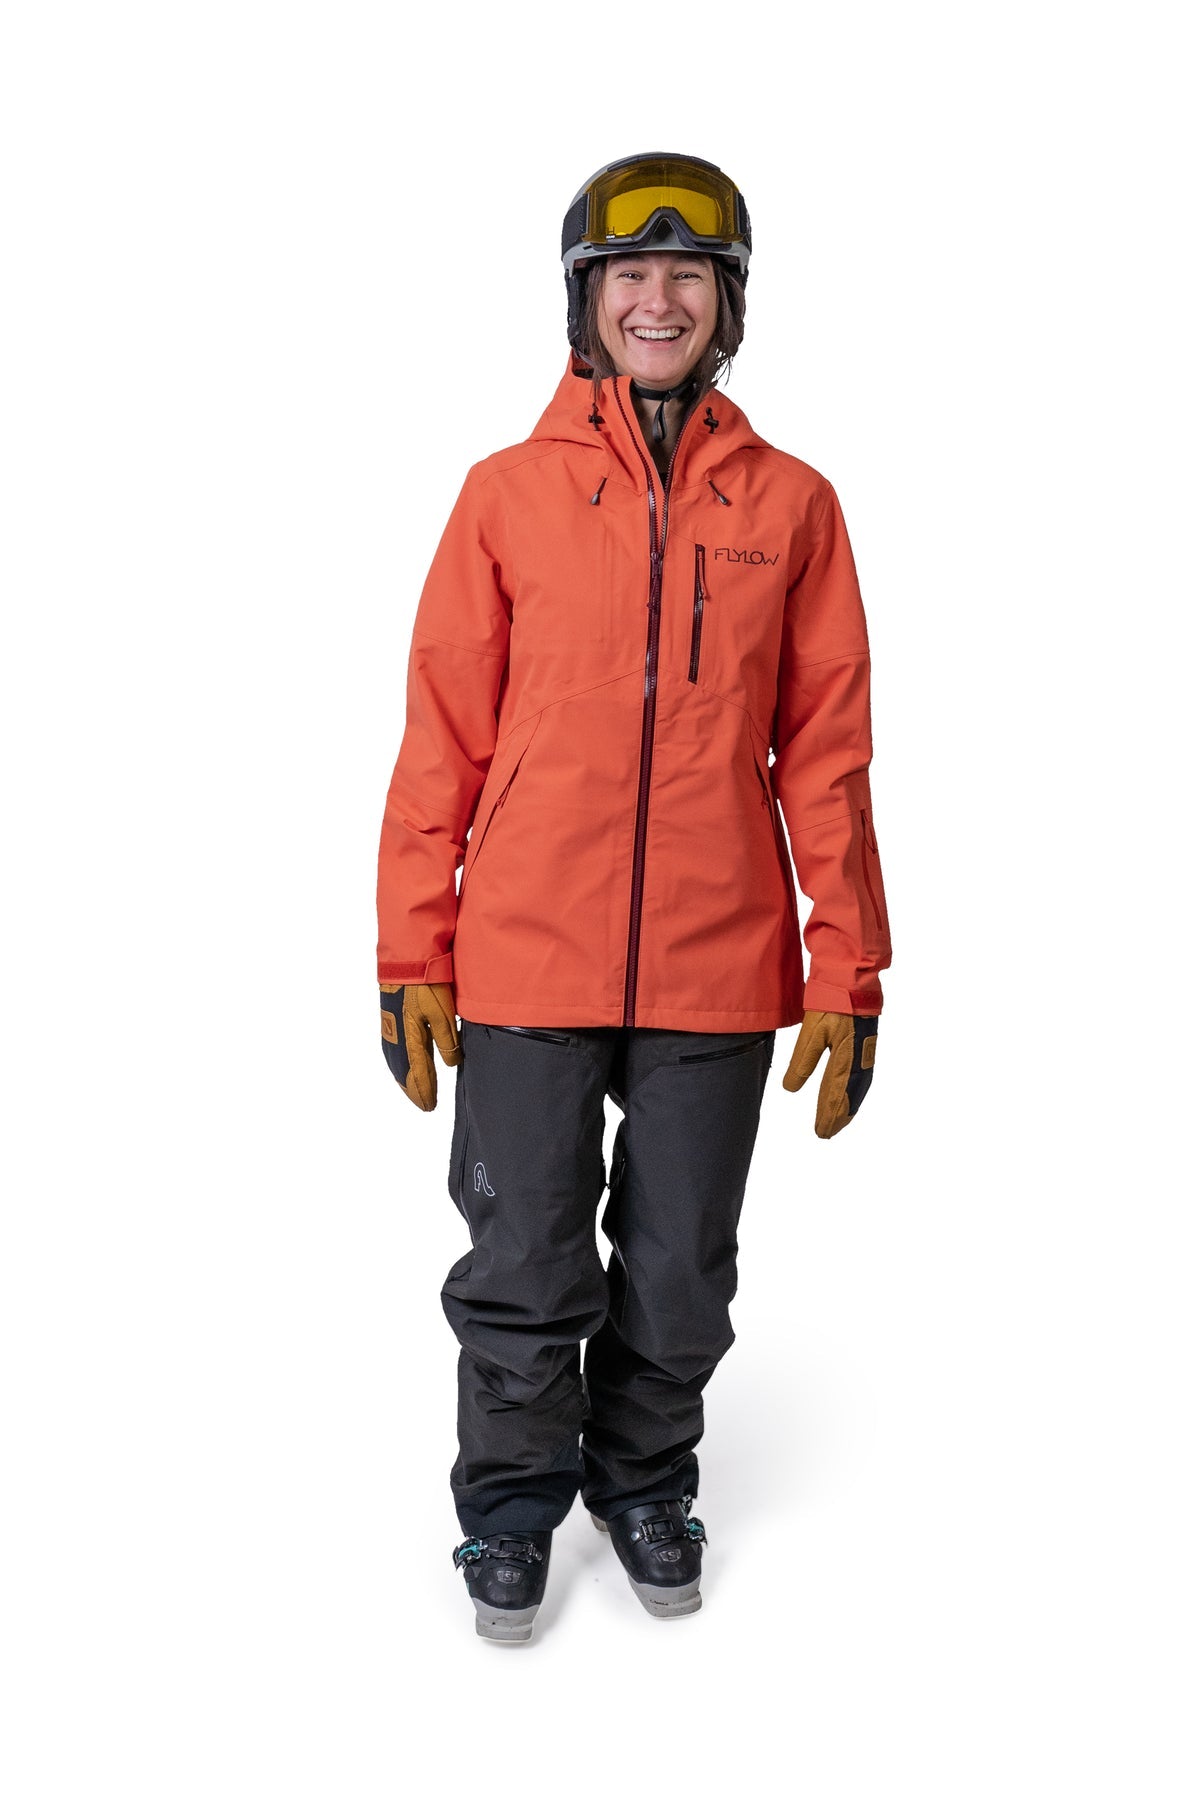 Women\'s warm and comfortable ski and snowboard coats - Saami Ski Shop